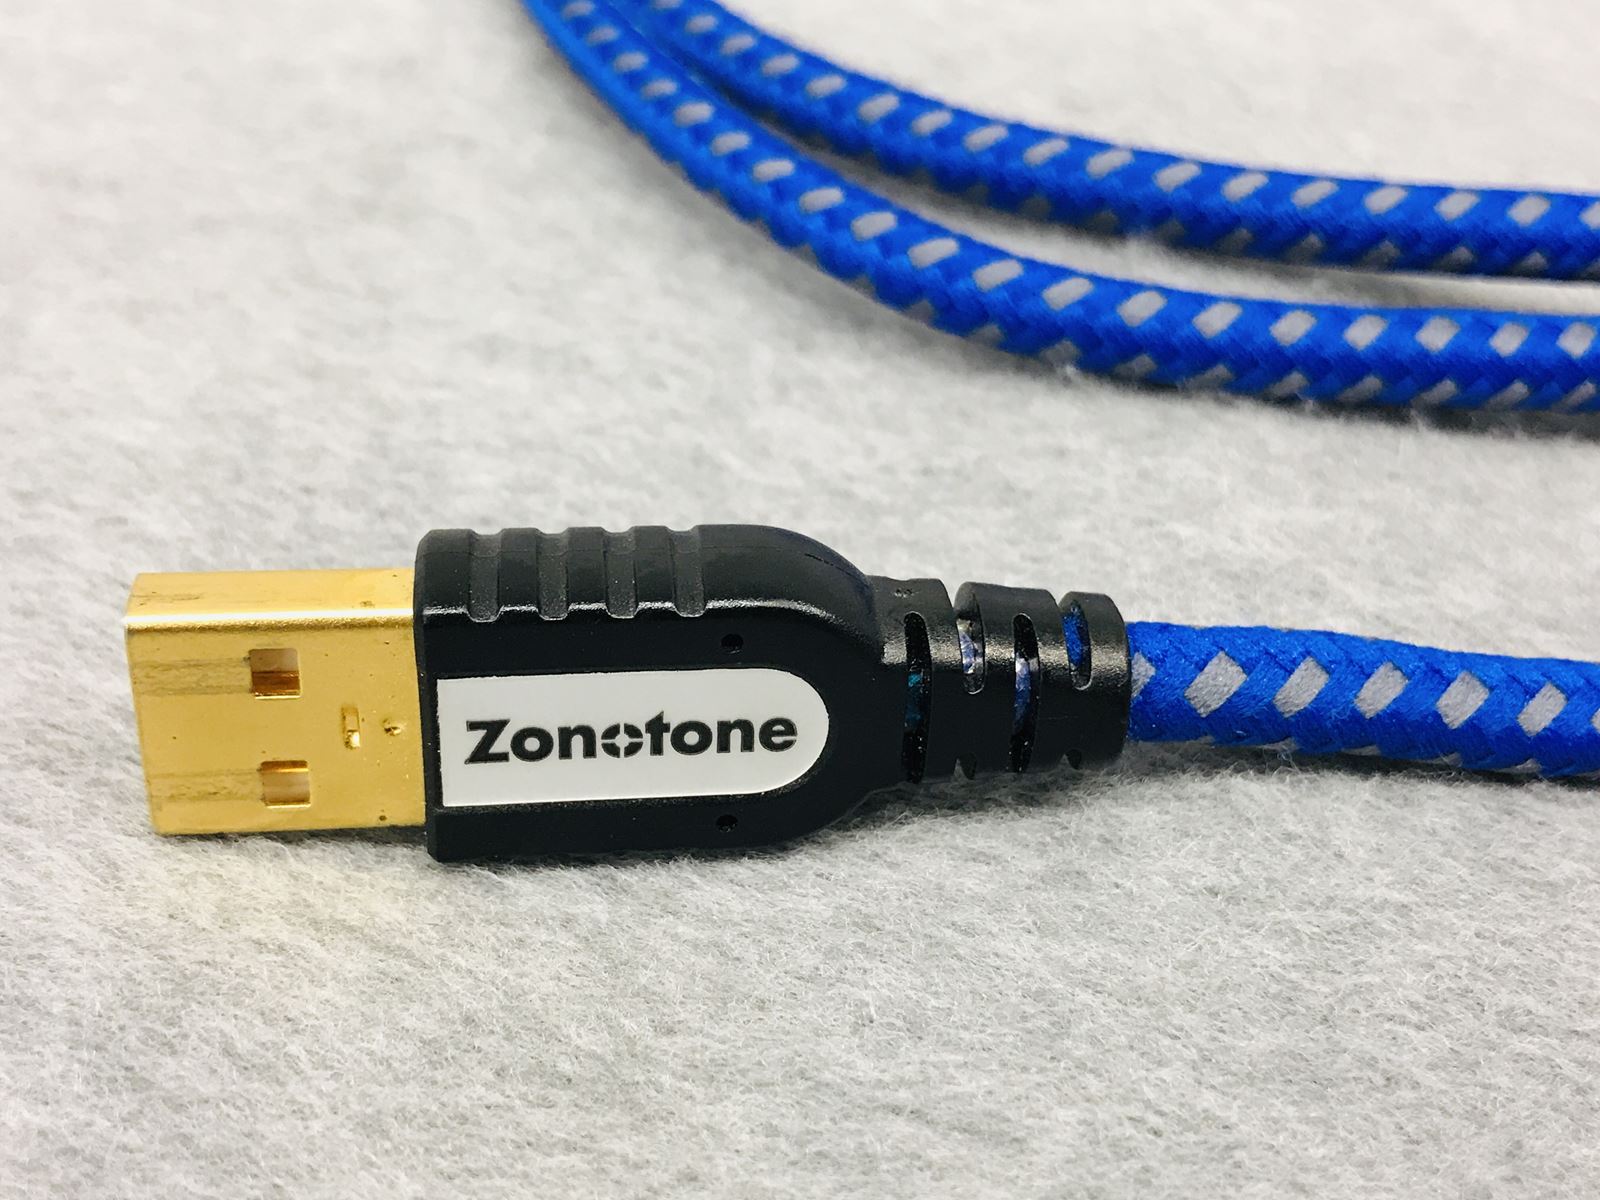 ゾノトーン ZONOTONE GRANDIO USB-2.0 ABタイプ